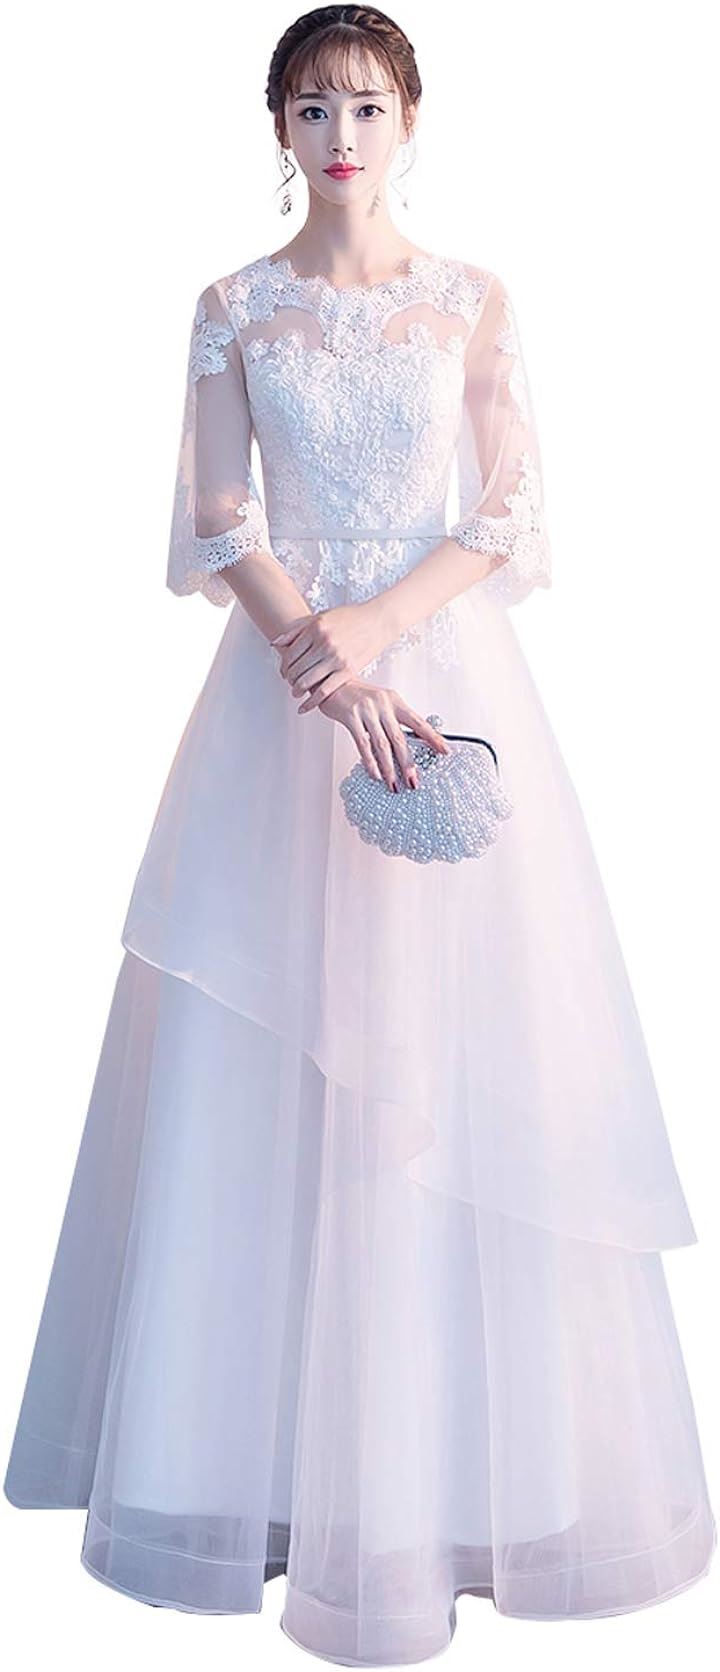 可愛い ウェディングドレス 二次会ドレス 結婚式 プリンセスラインドレス 新婦 挙式 MDM( 白A-ロング丈, XL)